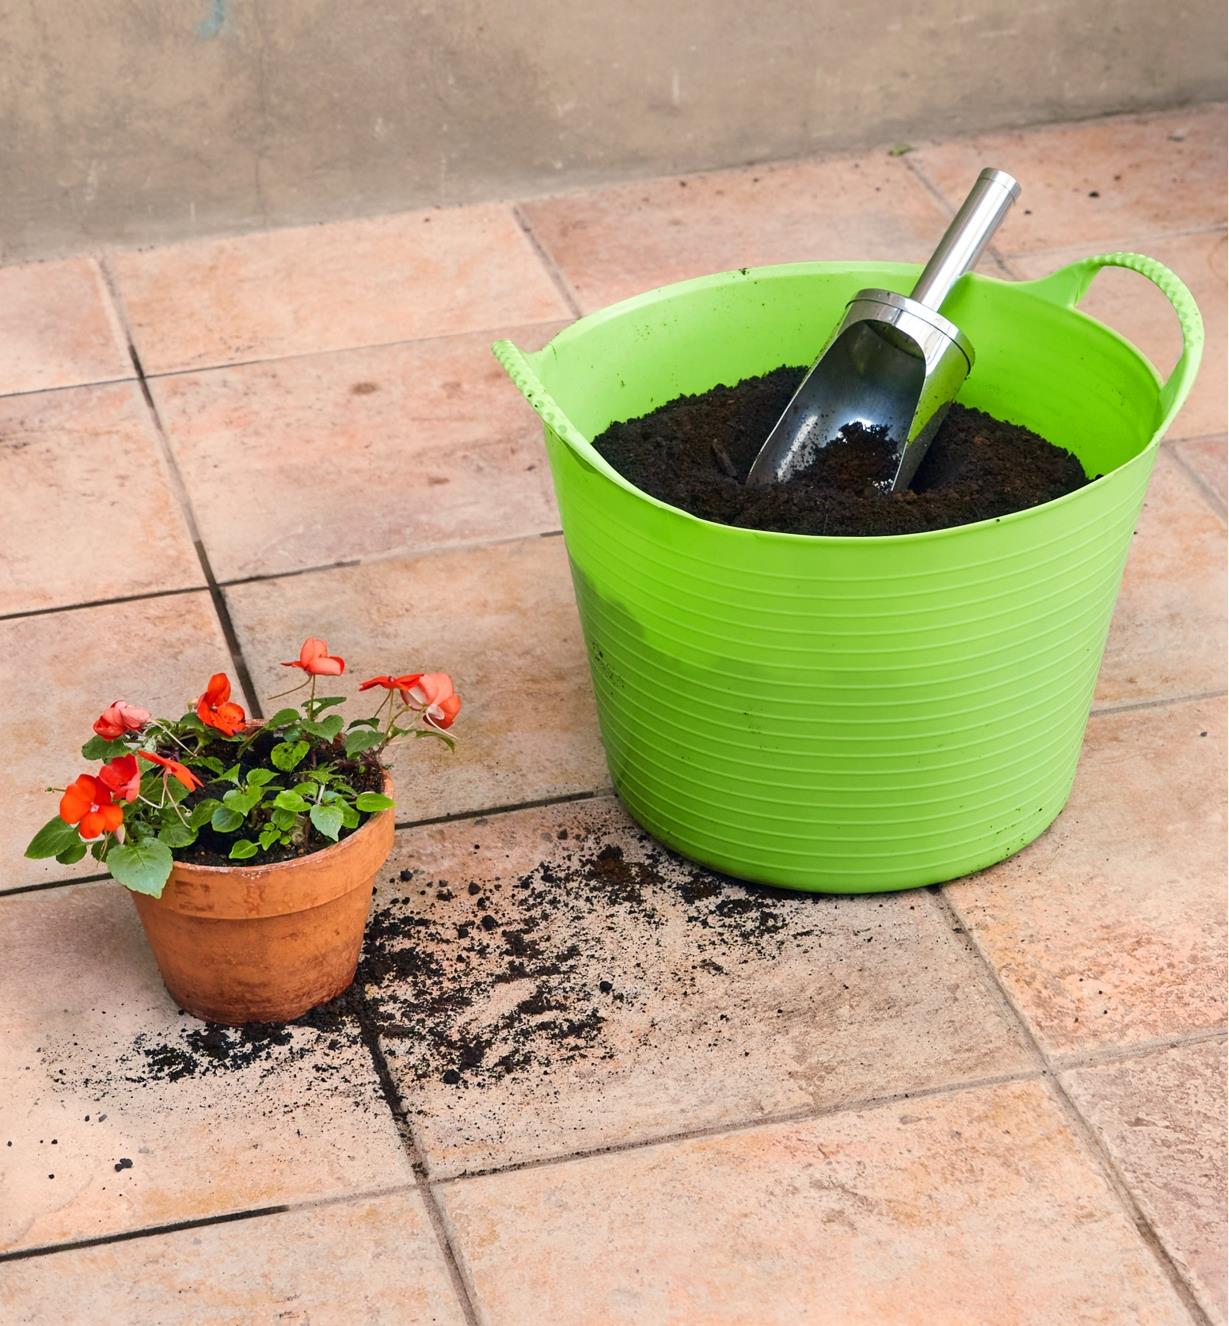 Des impatientes fraîchement plantées dans un pot posé sur un plancher carrelé près d’un panier de jardin de 14 L rempli de terreau